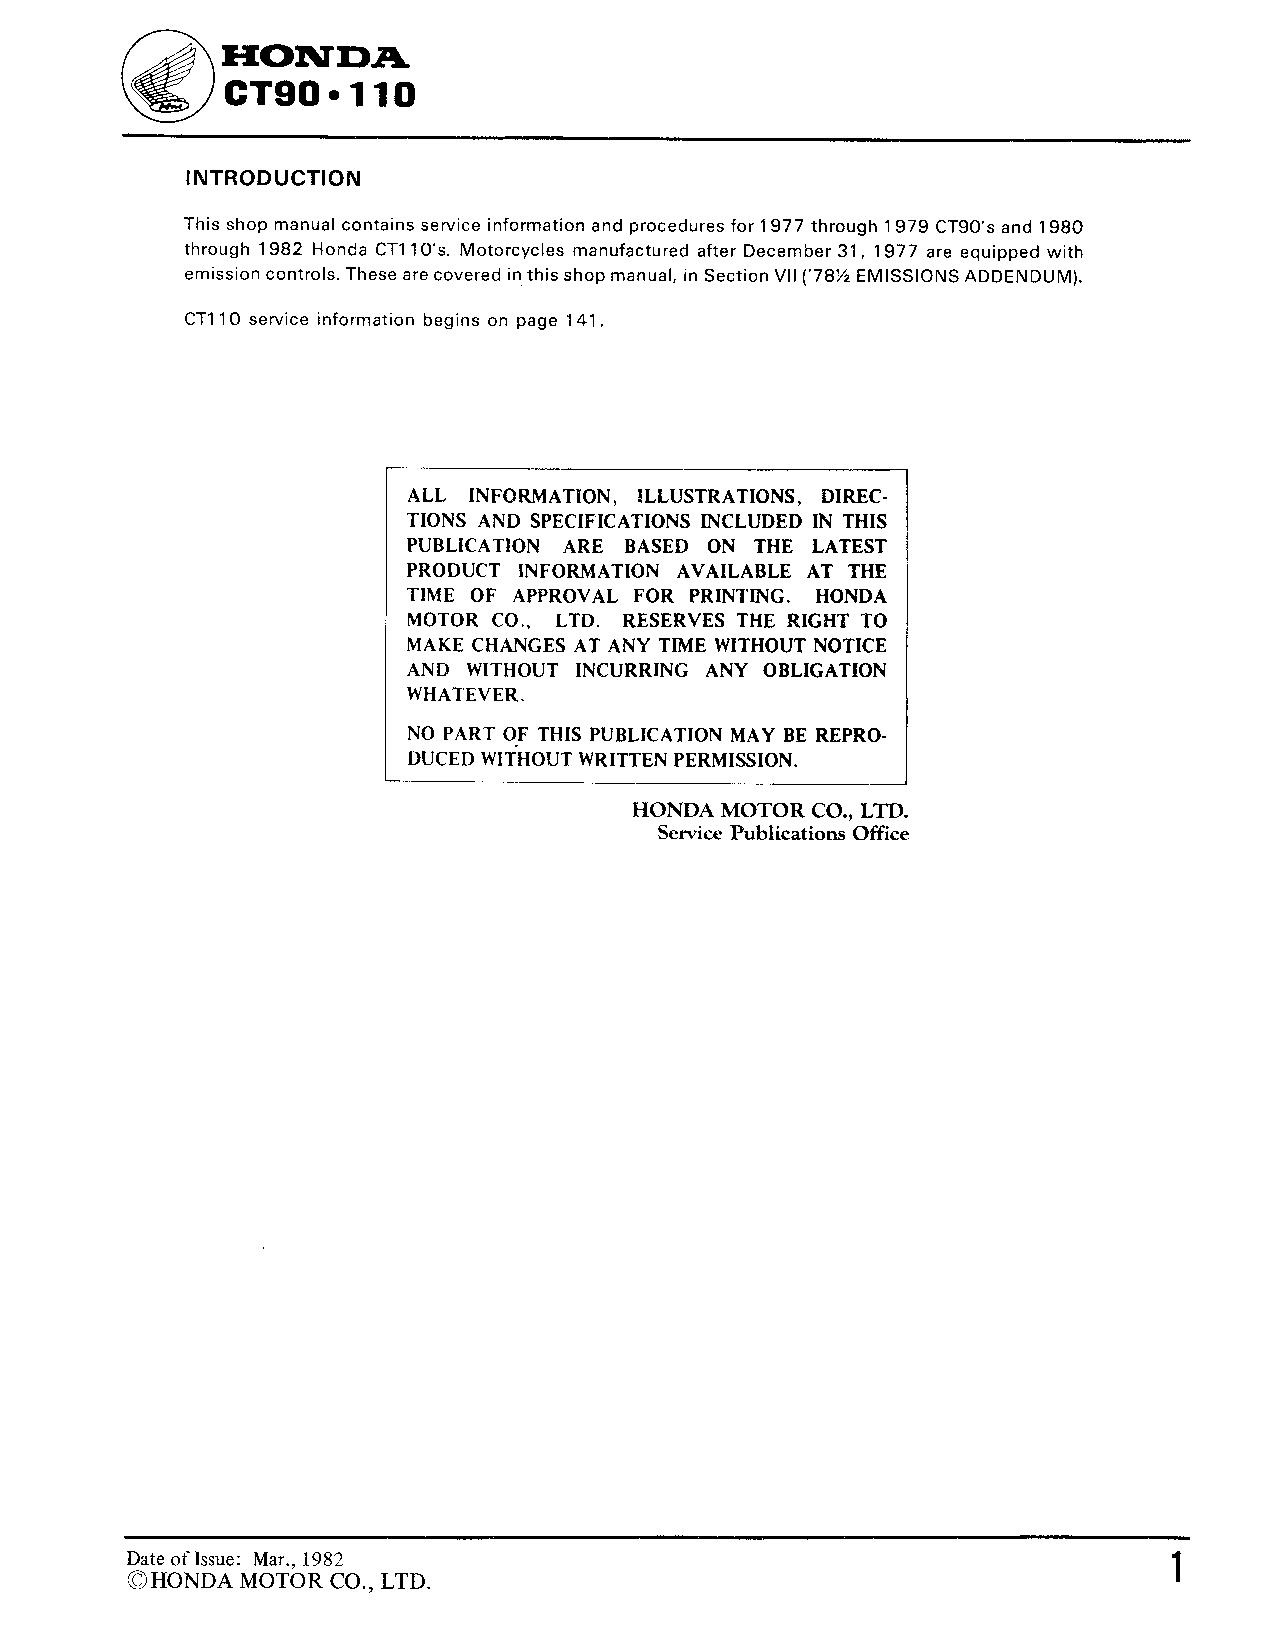 File:Honda CT90 CT110 Service Manual.pdf